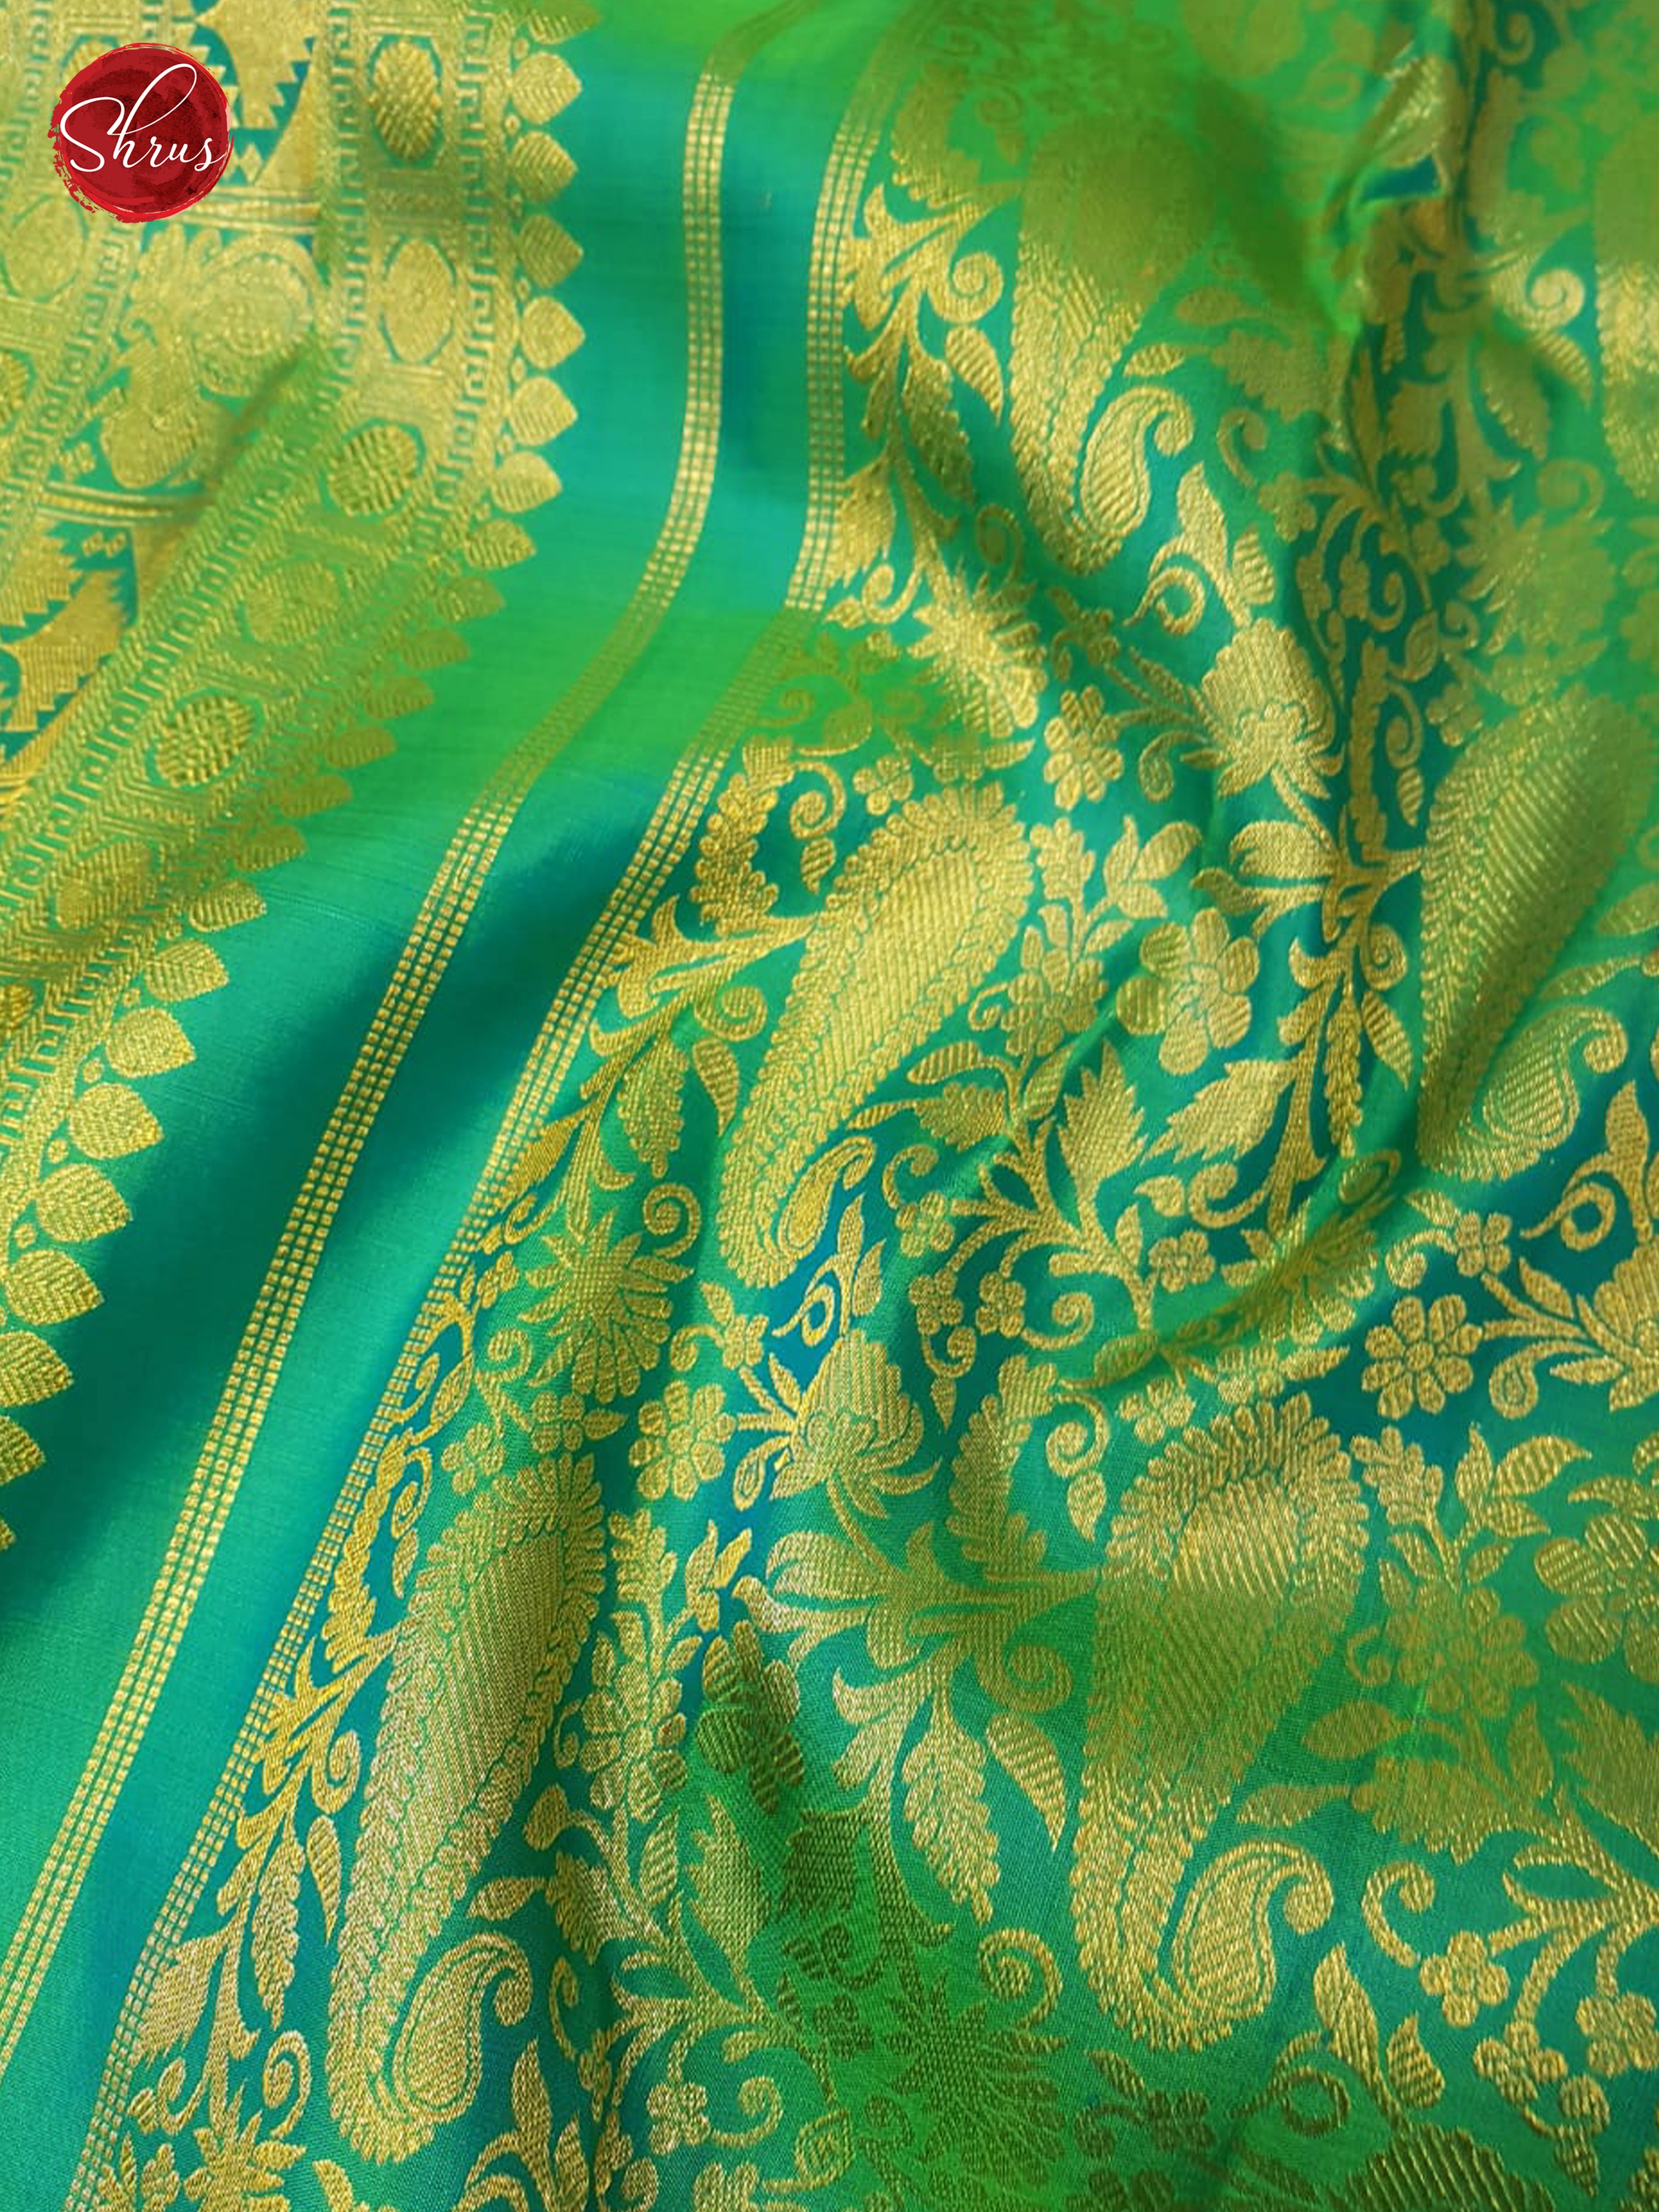 Green & Blue - Kanchipuram Silk with Border & Gold Zari - Shop on ShrusEternity.com